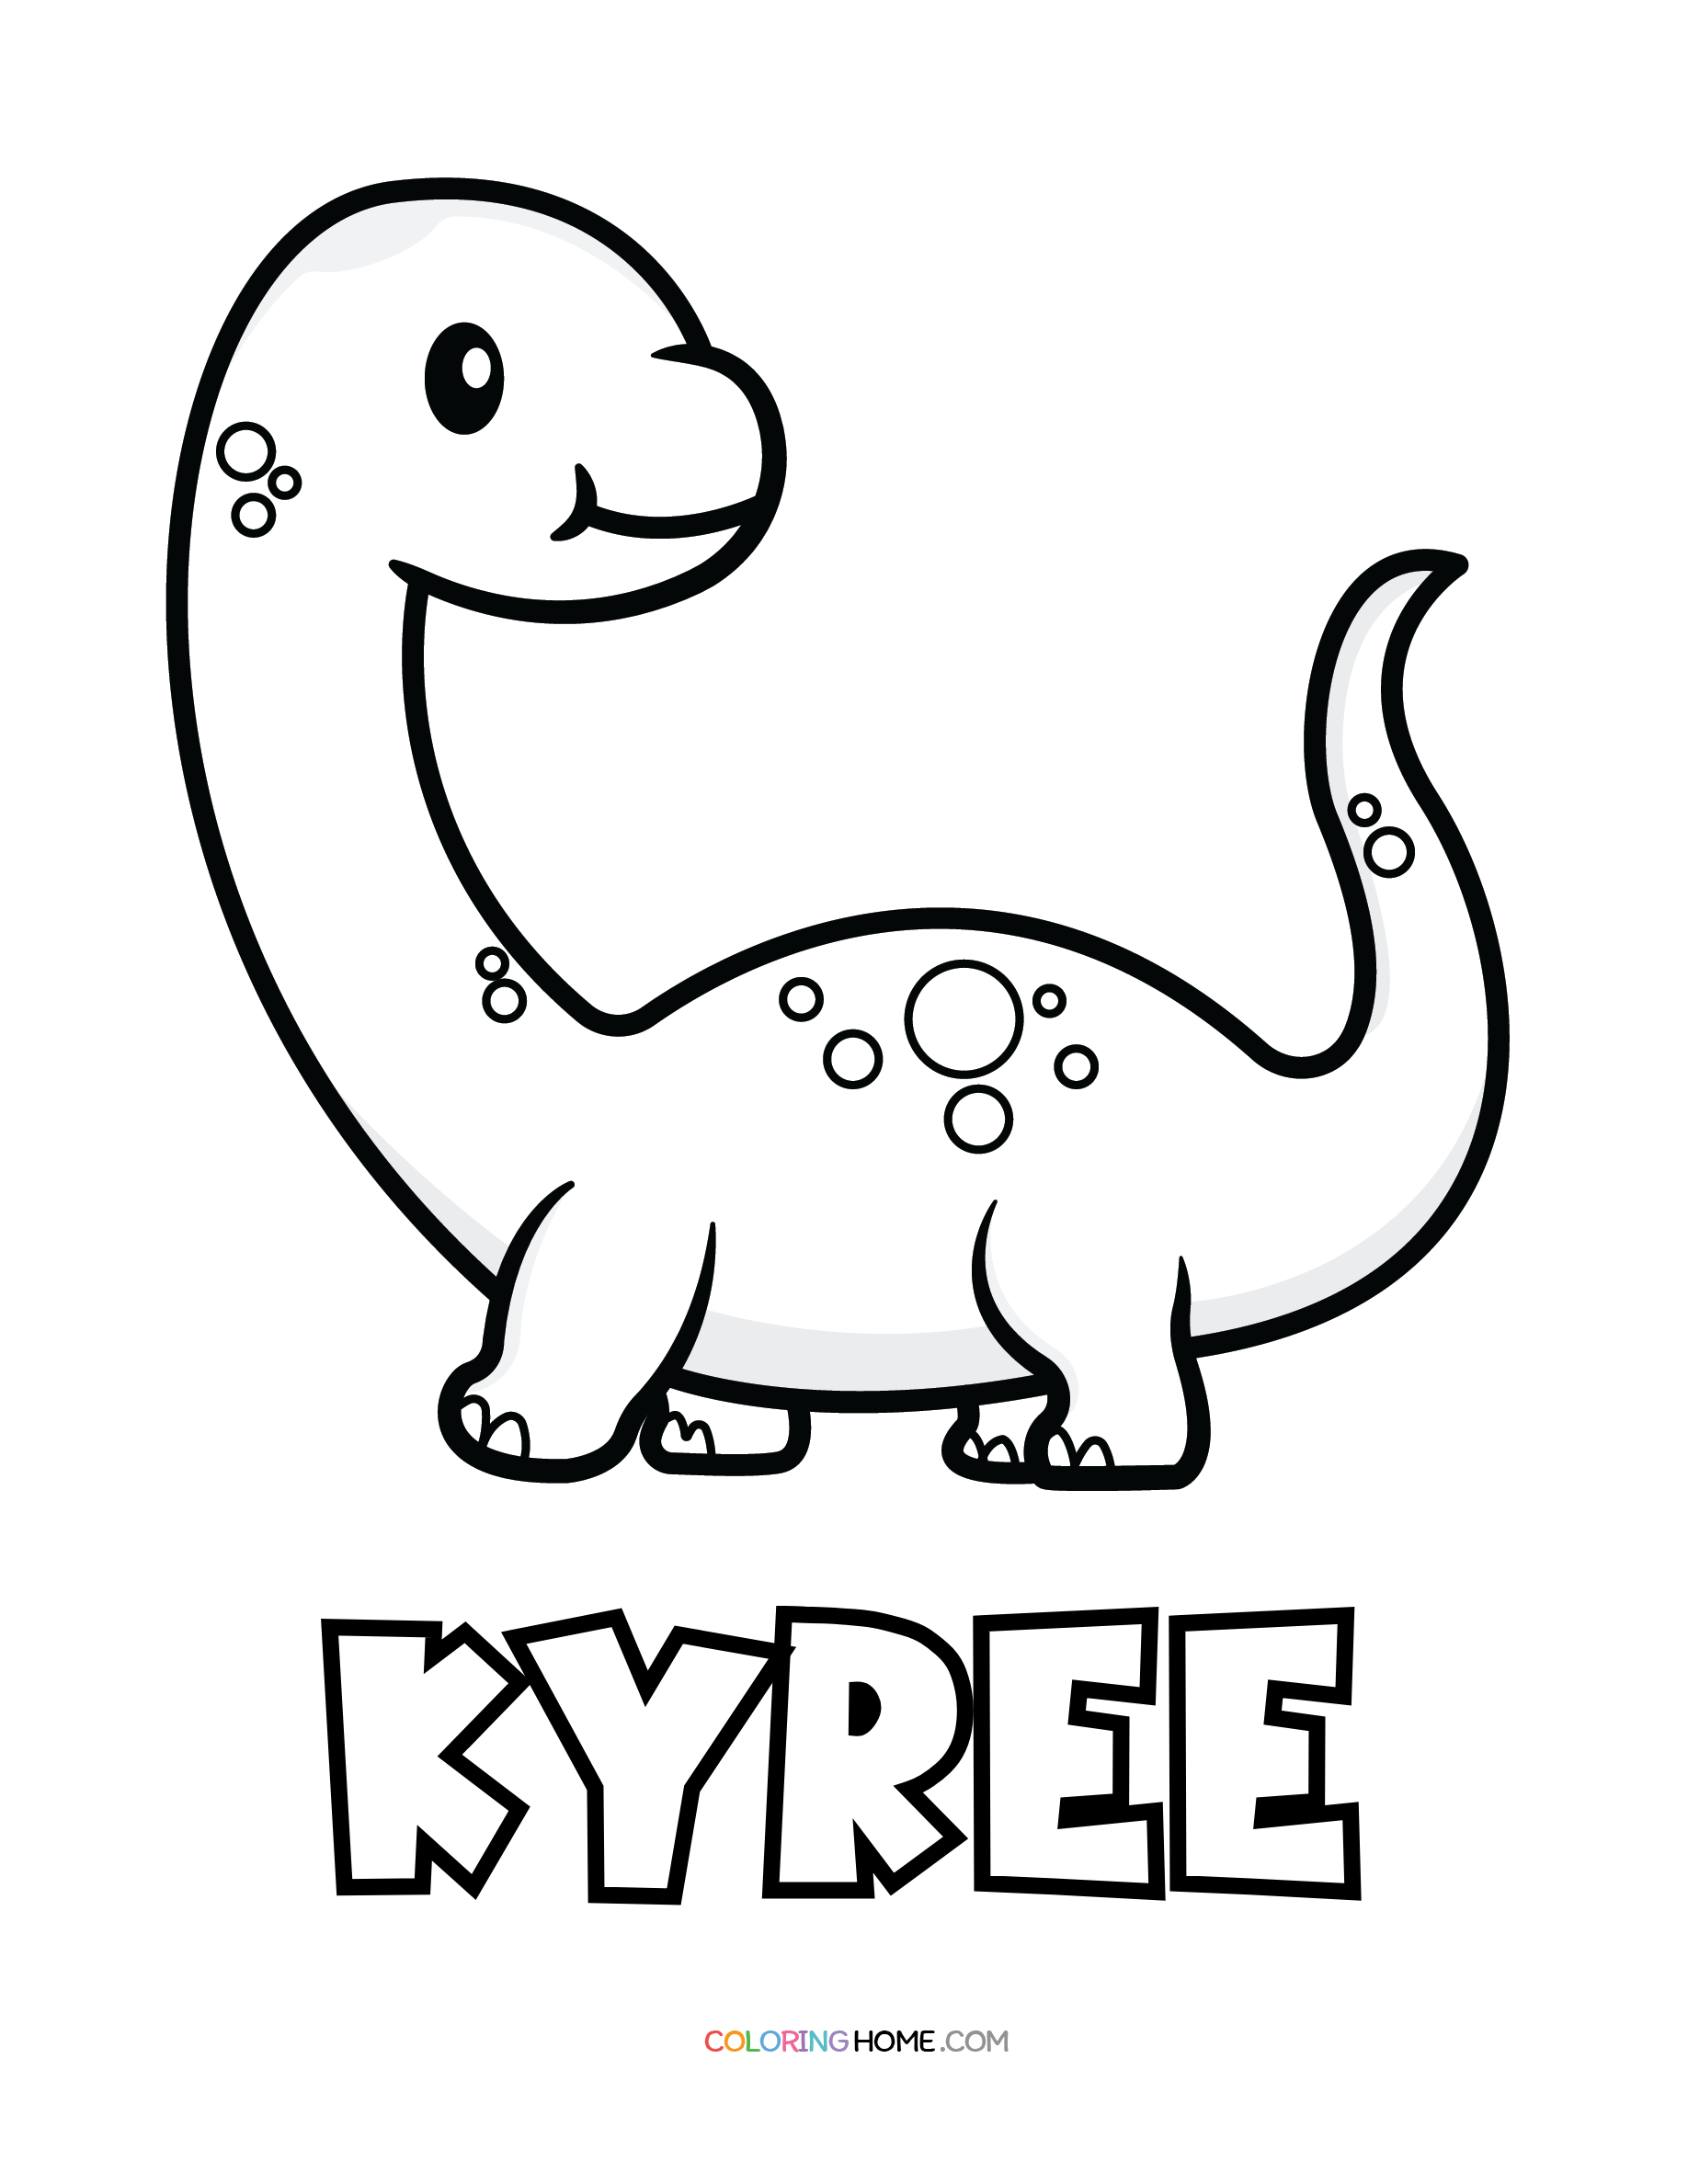 Kyree dinosaur coloring page